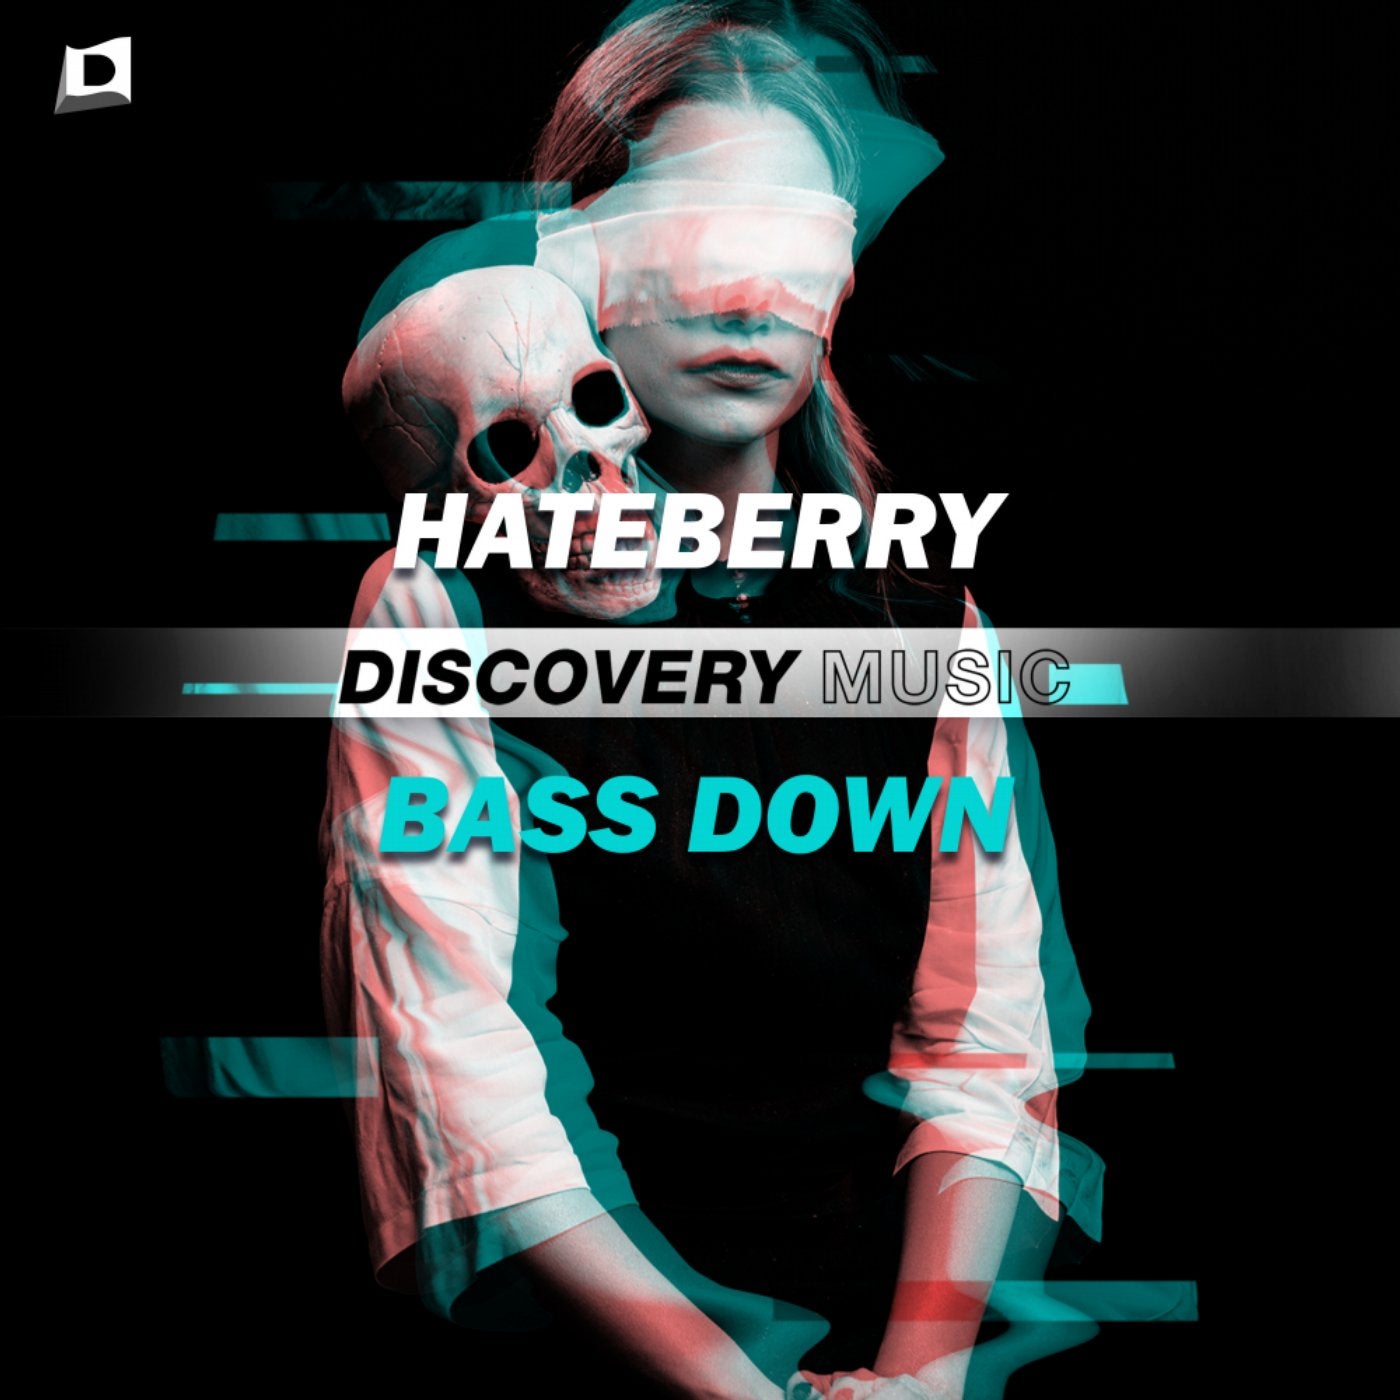 Bass Down